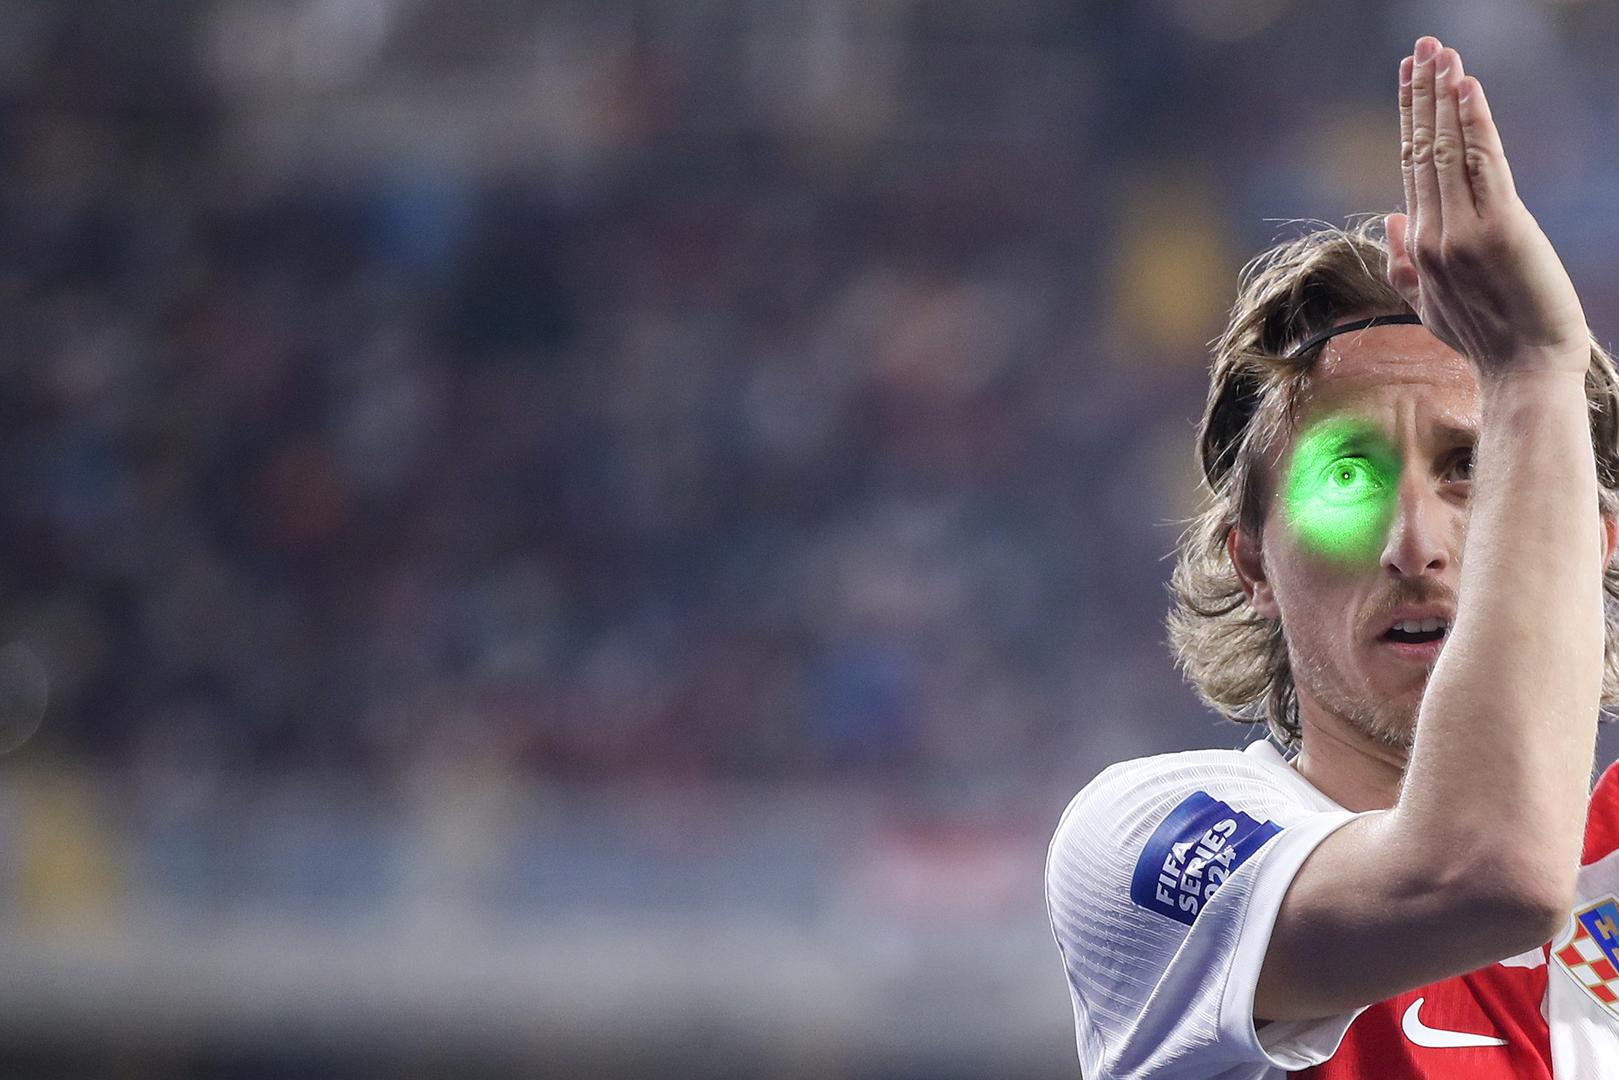 Kapetana hrvatske nogometne reprezentacije navijači su gađali laserskim pokazivačima kad god bi izvodio korner ili slobodan udarac.